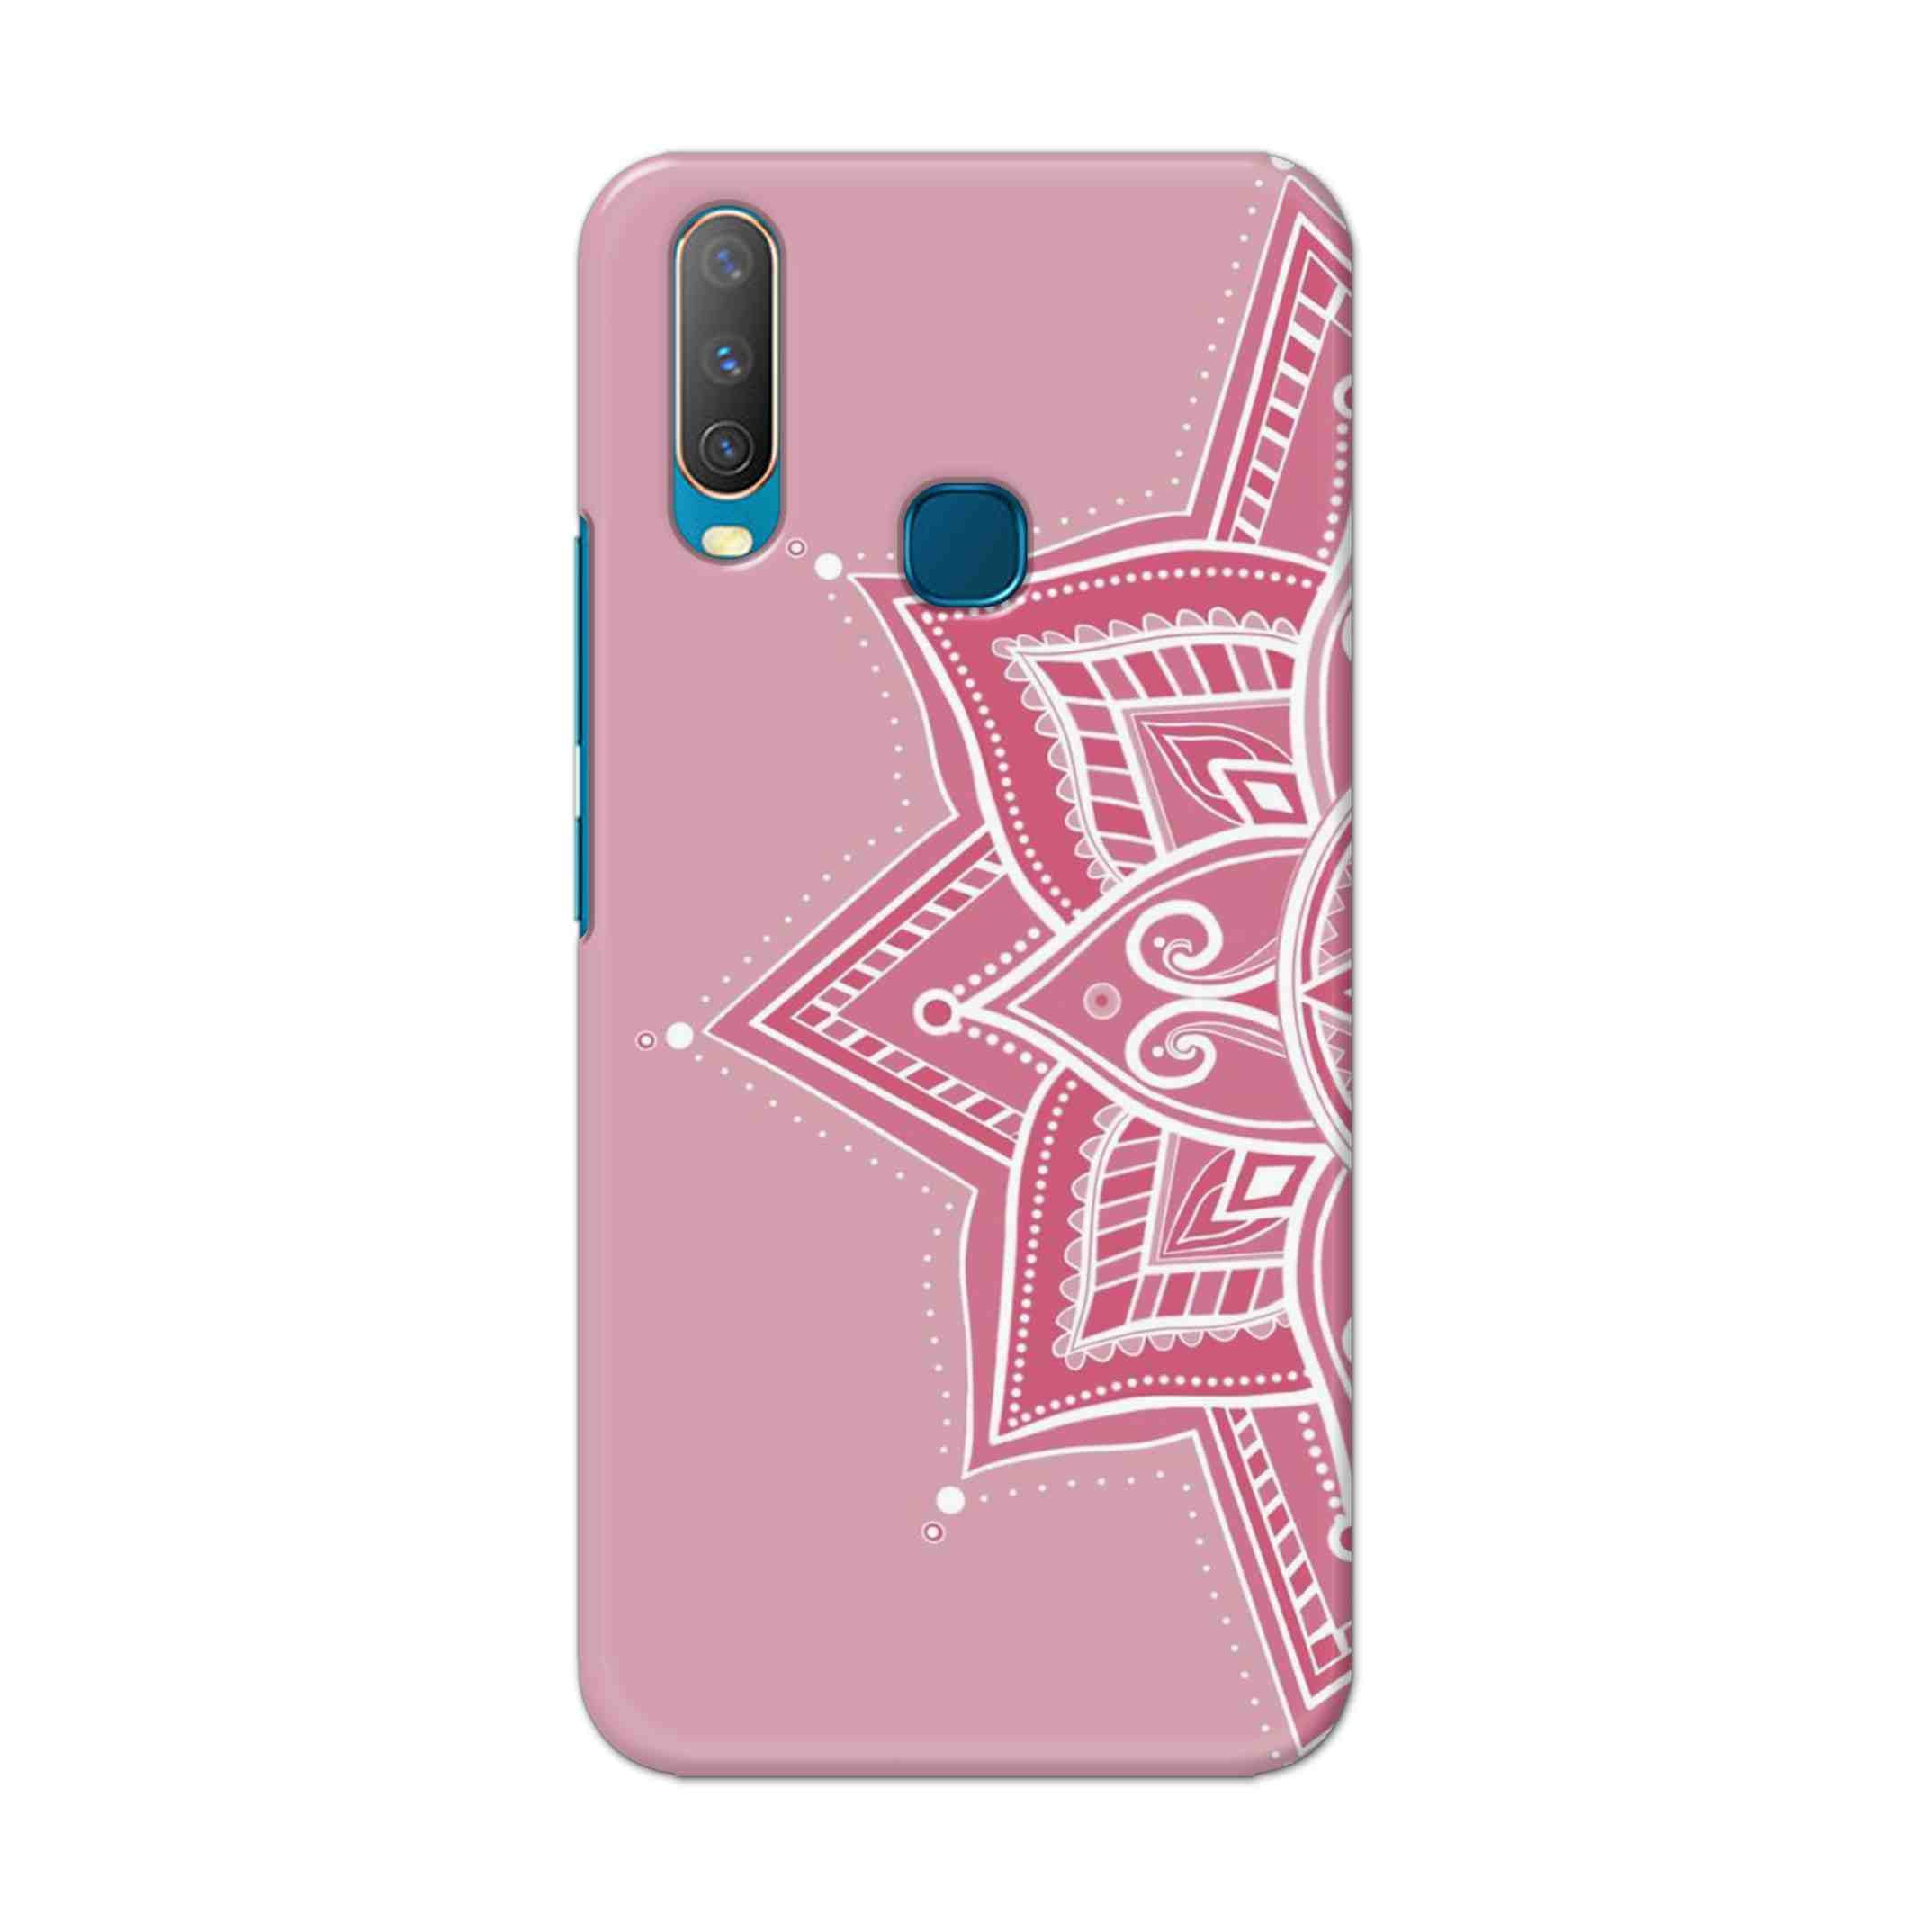 Buy Pink Rangoli Hard Back Mobile Phone Case Cover For Vivo Y17 / U10 Online